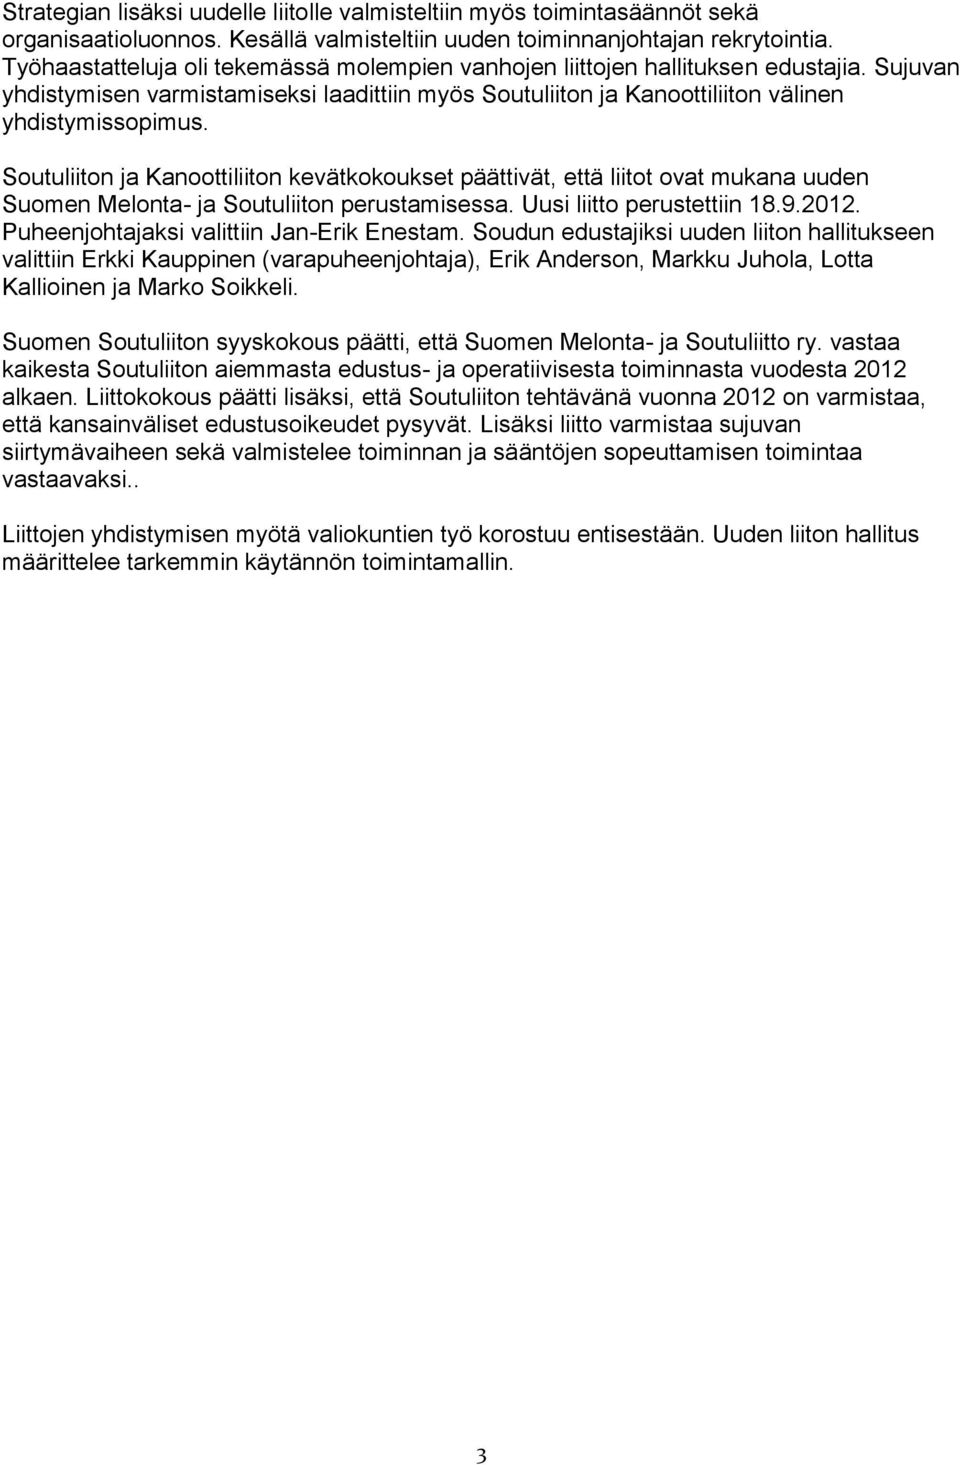 Soutuliiton ja Kanoottiliiton kevätkokoukset päättivät, että liitot ovat mukana uuden Suomen Melonta- ja Soutuliiton perustamisessa. Uusi liitto perustettiin 18.9.2012.